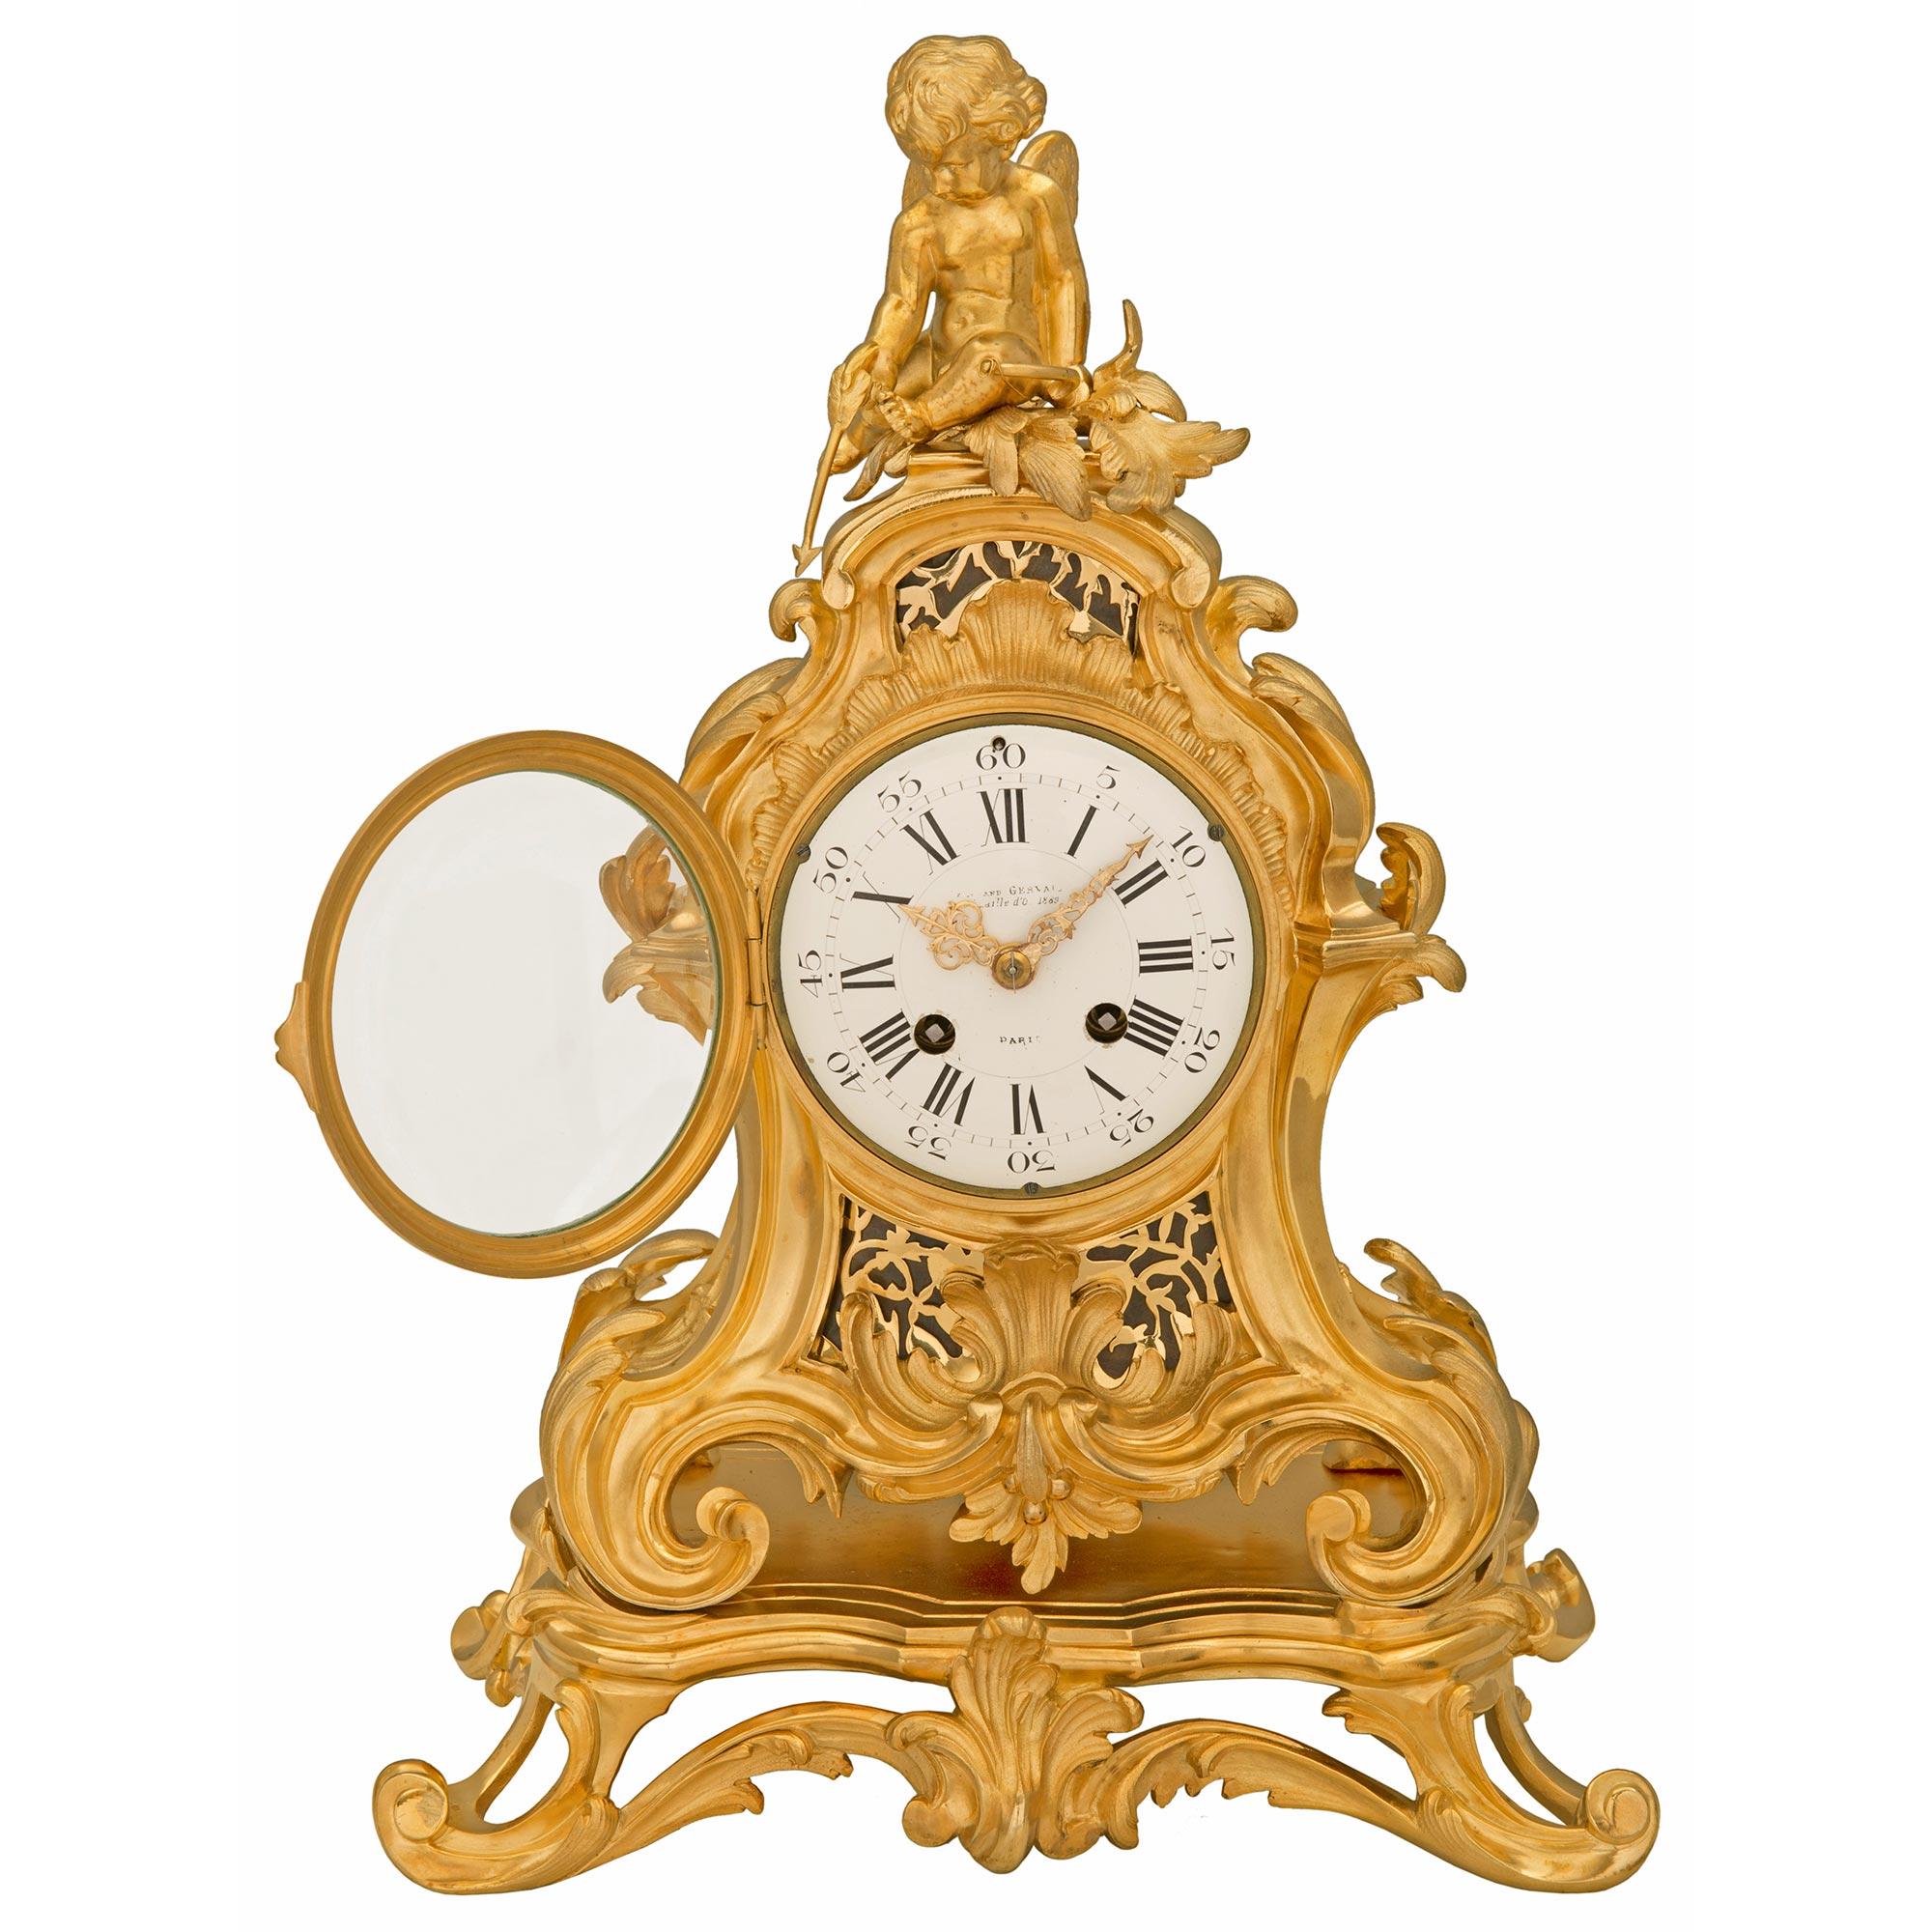 Une exceptionnelle et très haute qualité de pendule française du 19ème siècle en st. Louis XV et bronze doré. L'horloge est surélevée par des feuilles d'acanthe en volute très élégantes, centrées sur une belle réserve feuillagée. D'autres volutes